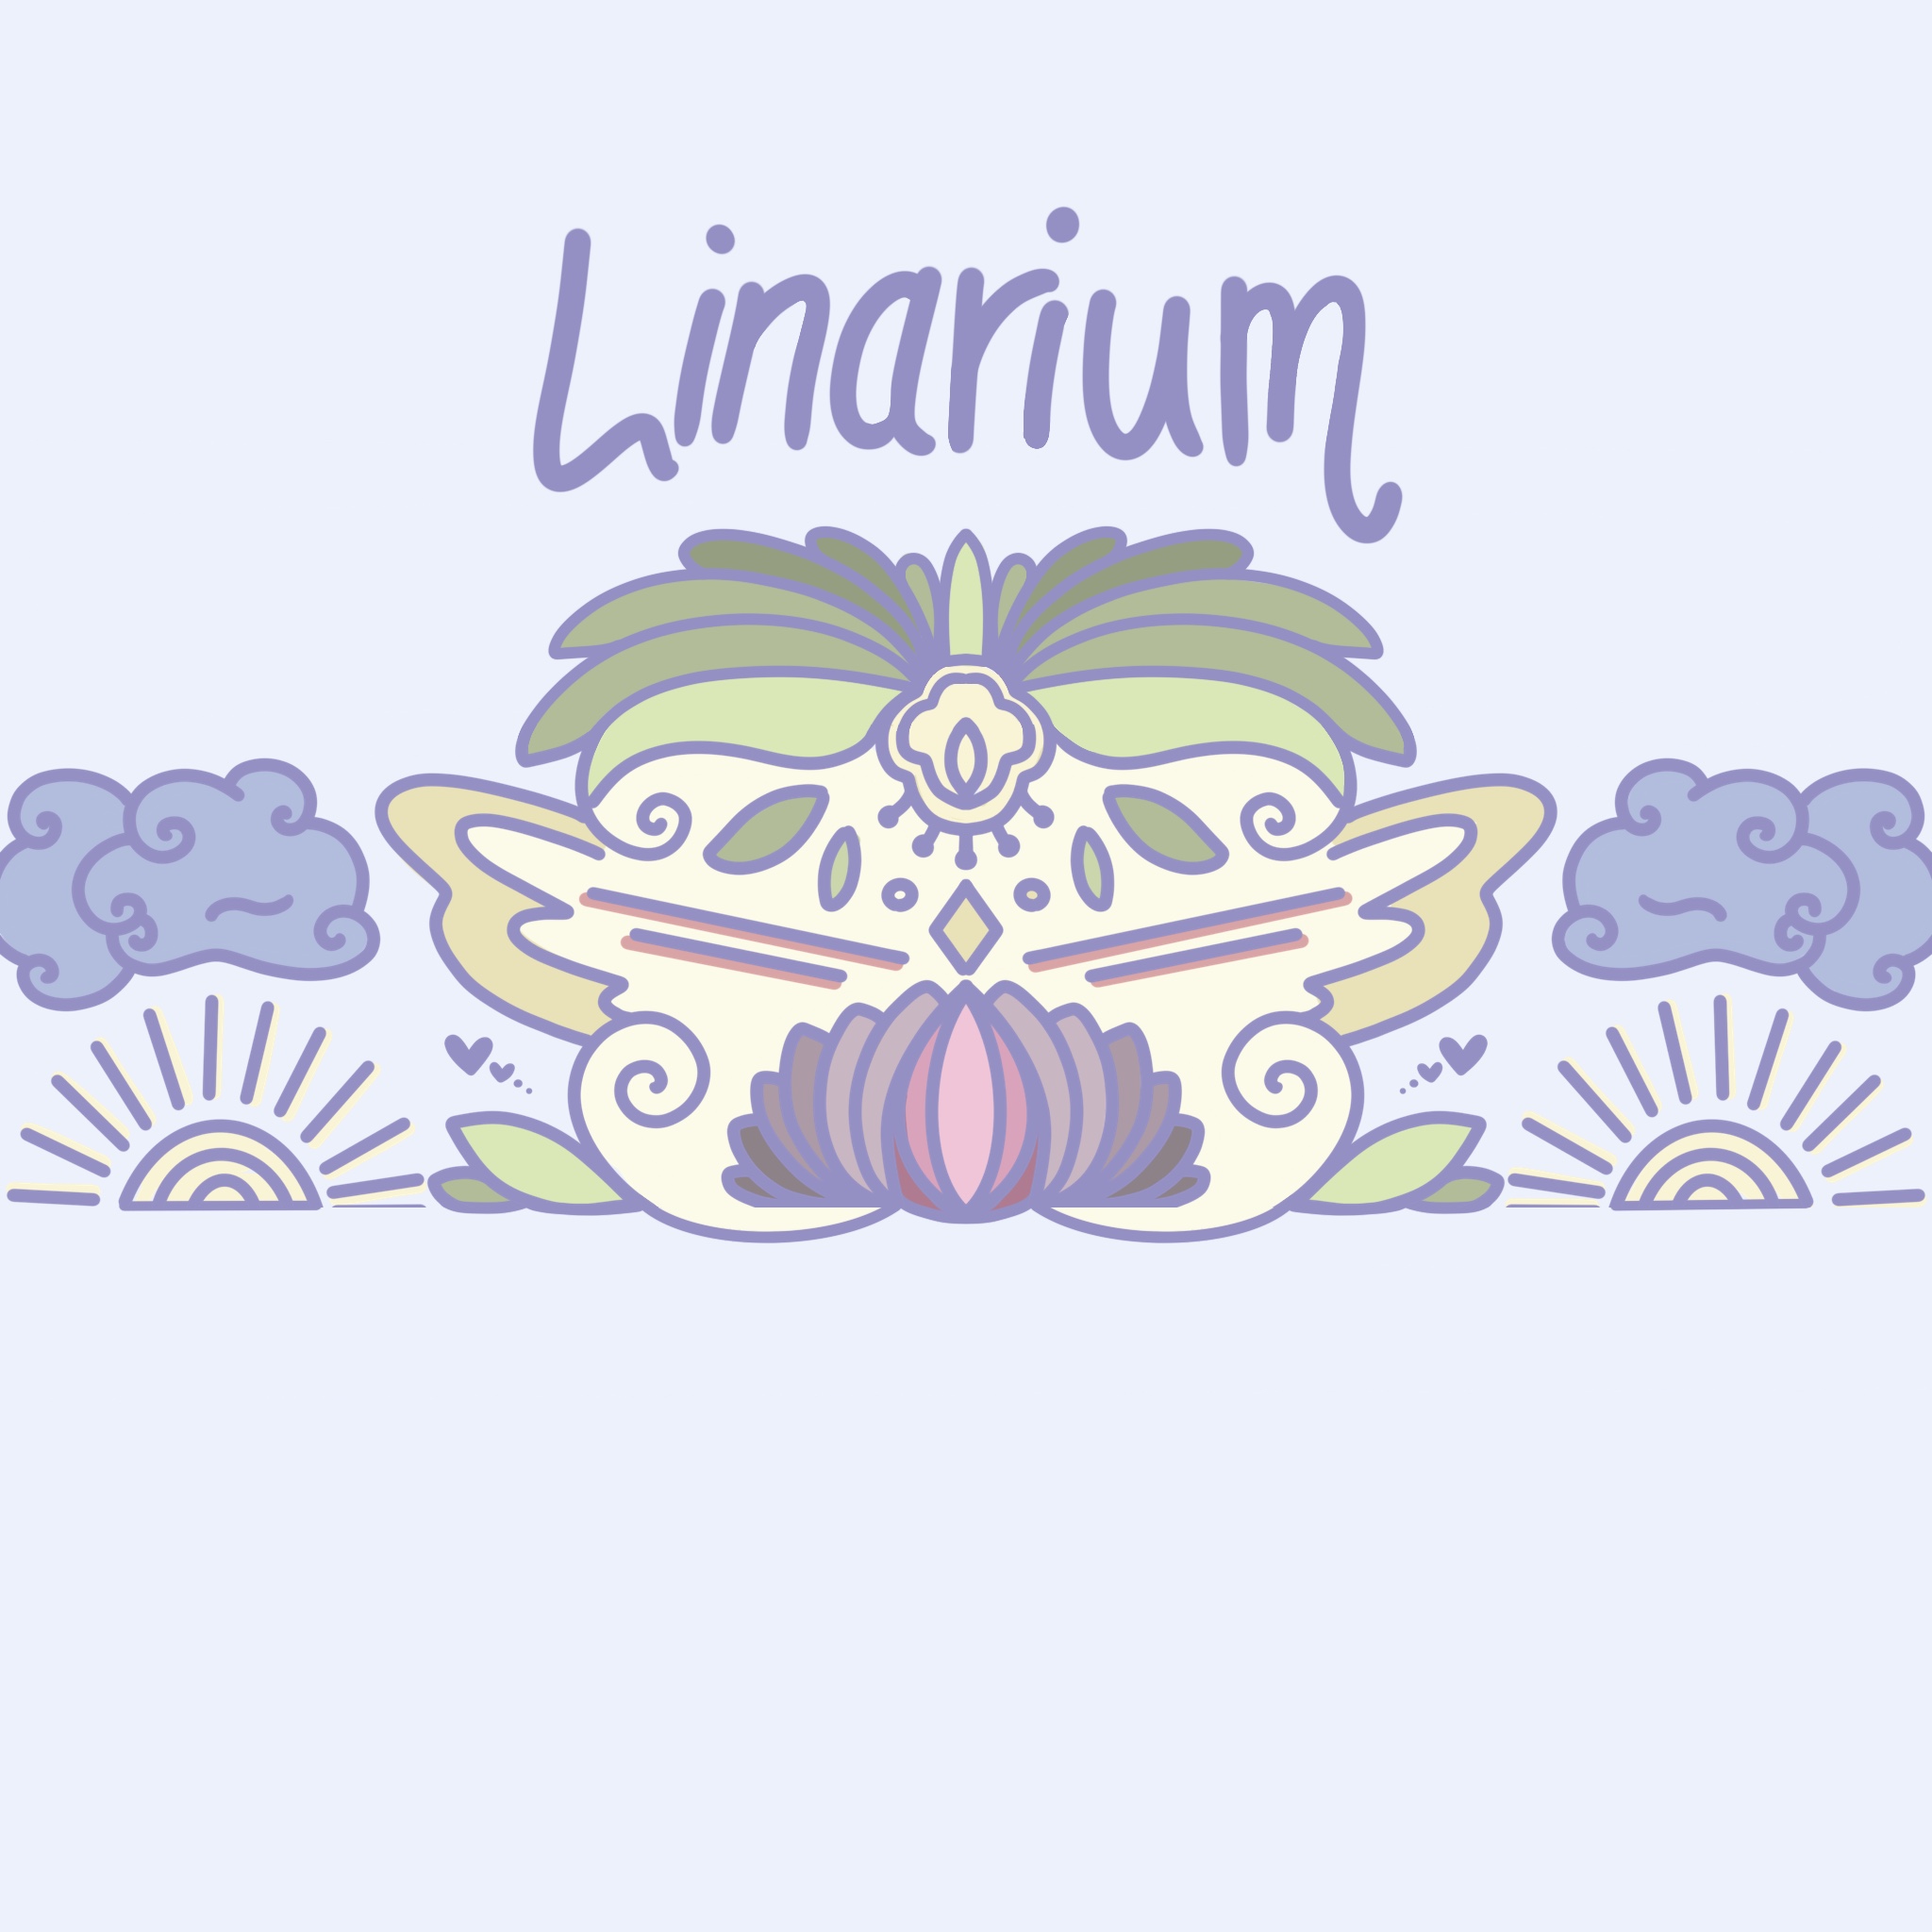 Linarium